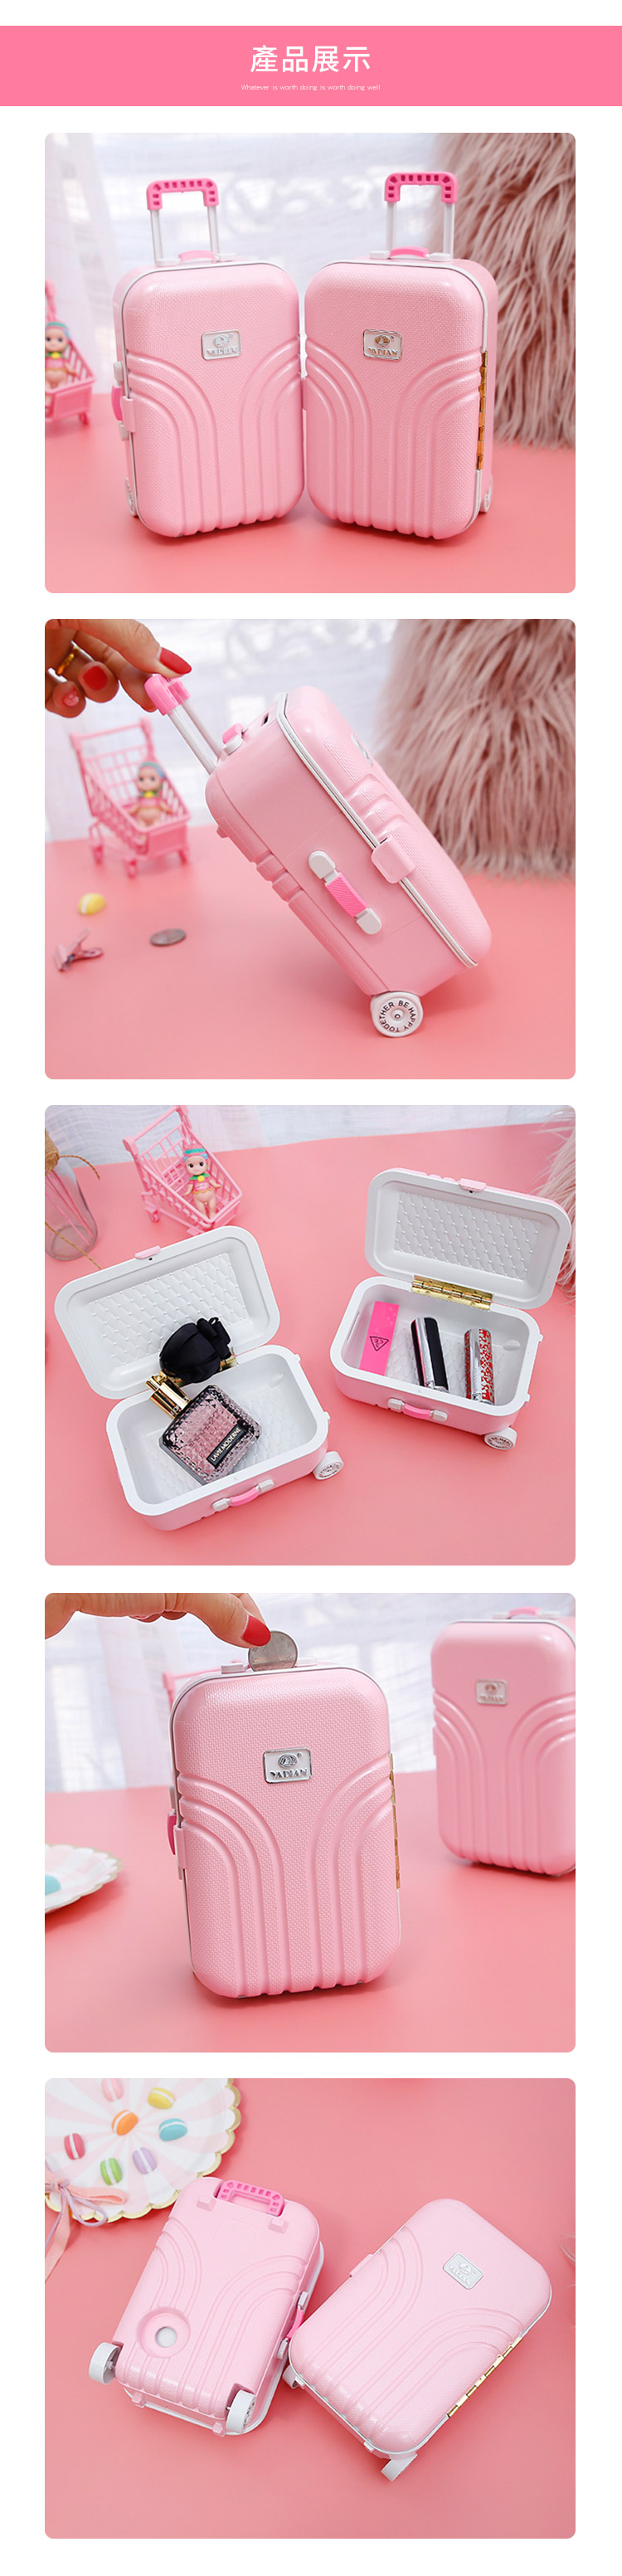 創意小物館 創意可愛行李箱造型儲蓄收納盒 粉紅色